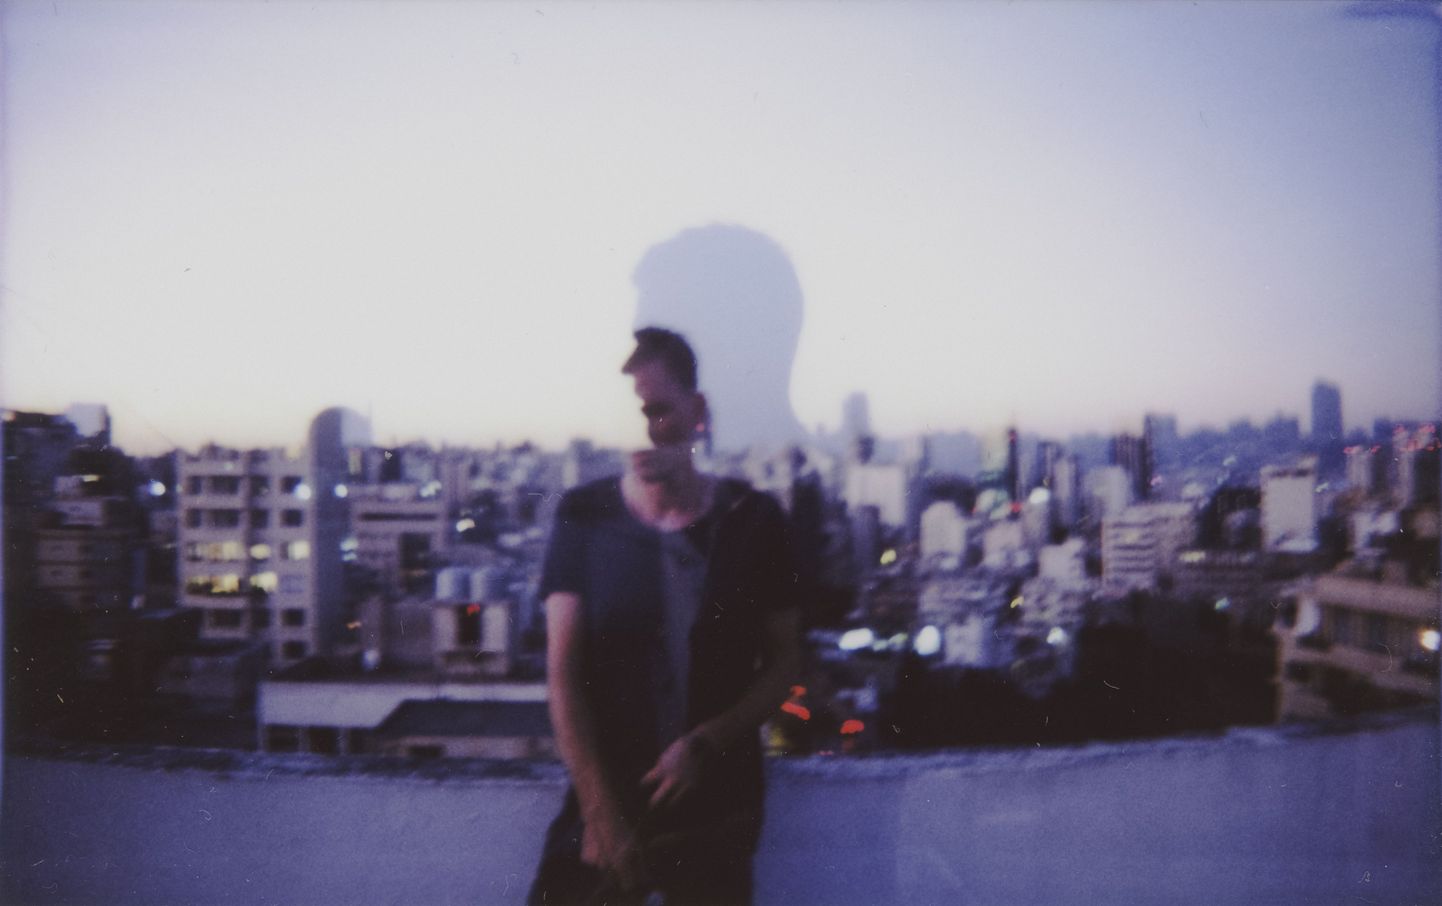 NOËP avaldas oma esimese ülemaailmse singli «Rooftop»